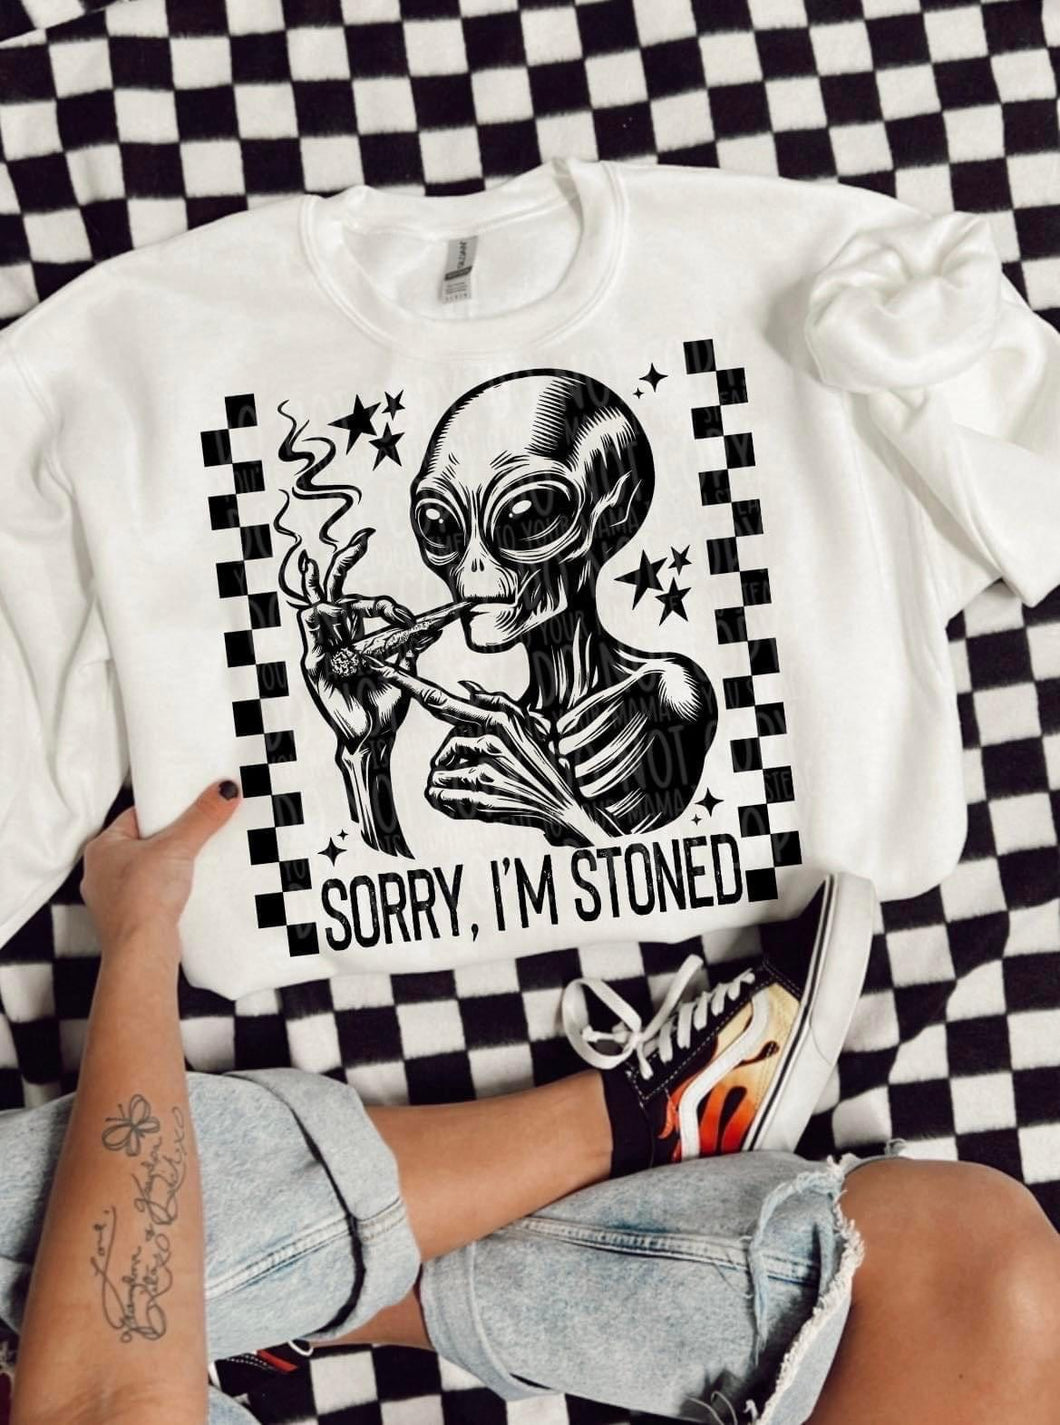 Sorry, I’m stoned